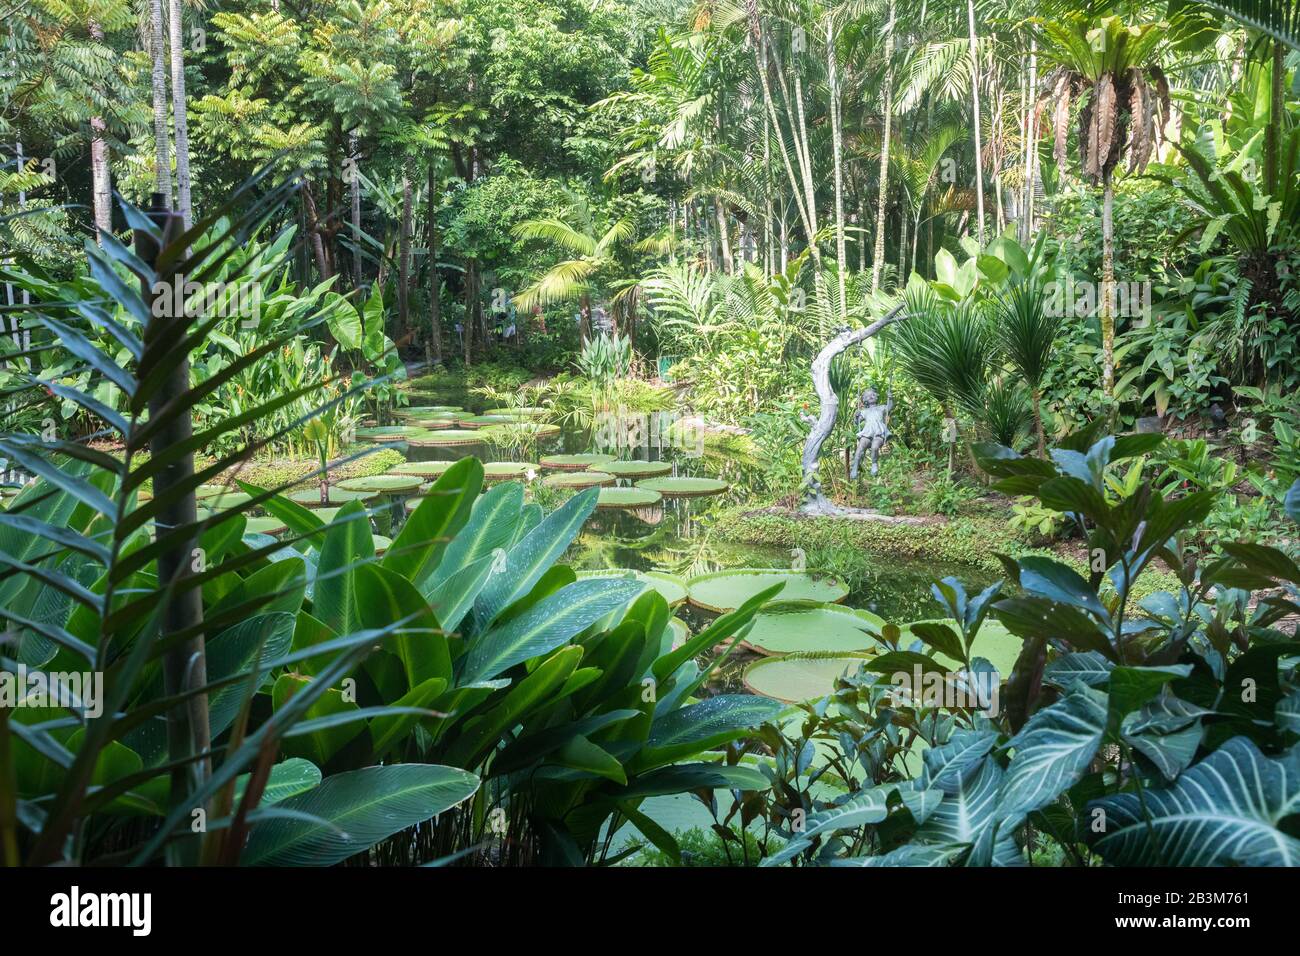 Ginger plants, Singapore Botanic Gardens Stock Photo